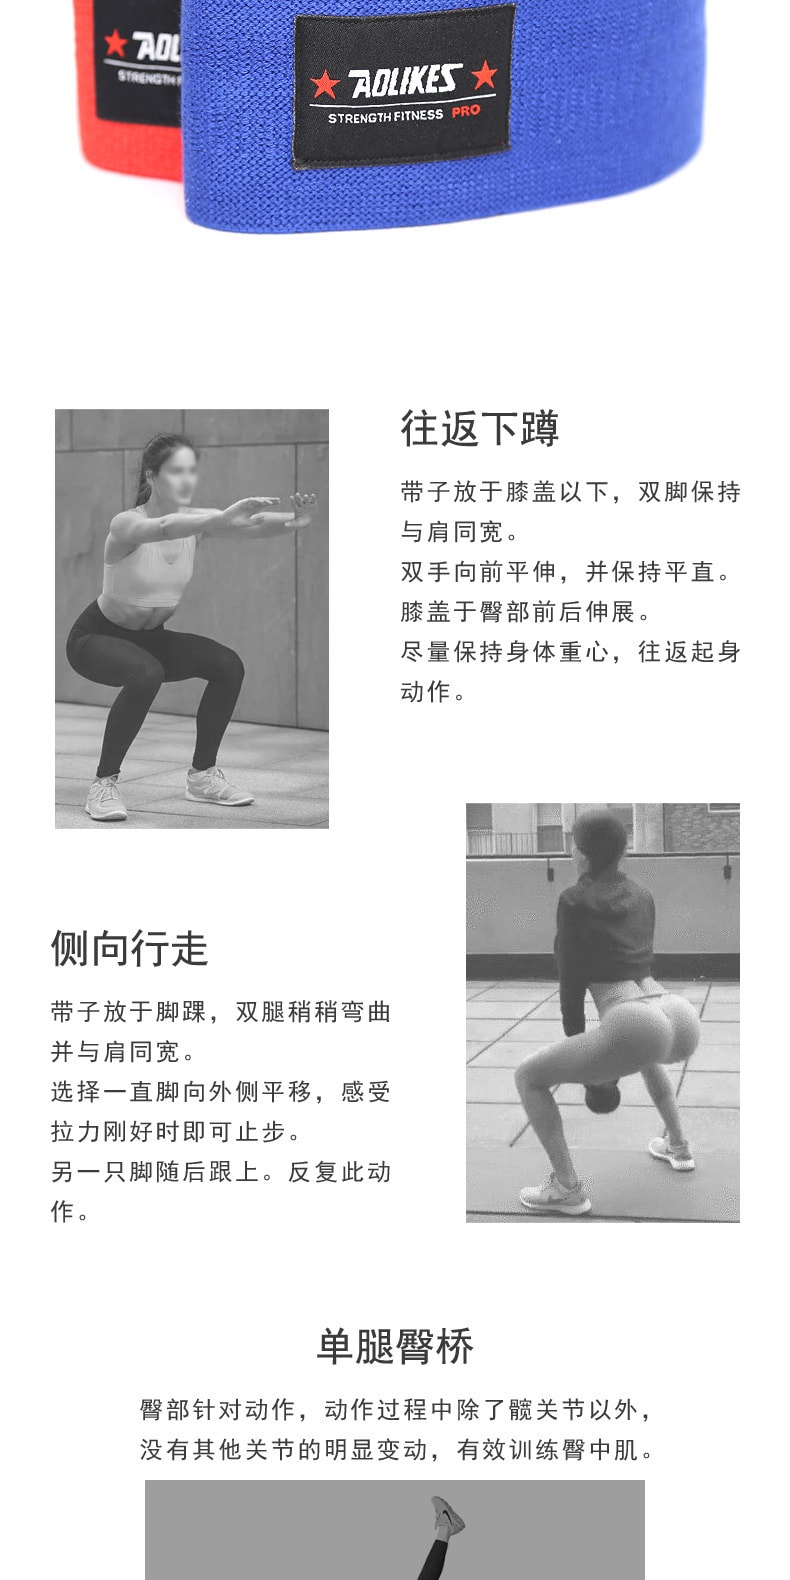 已淘汰[中国直邮]乐学办公 瑜伽健身弹力带 翘臀神器 黑色XL码 单个装